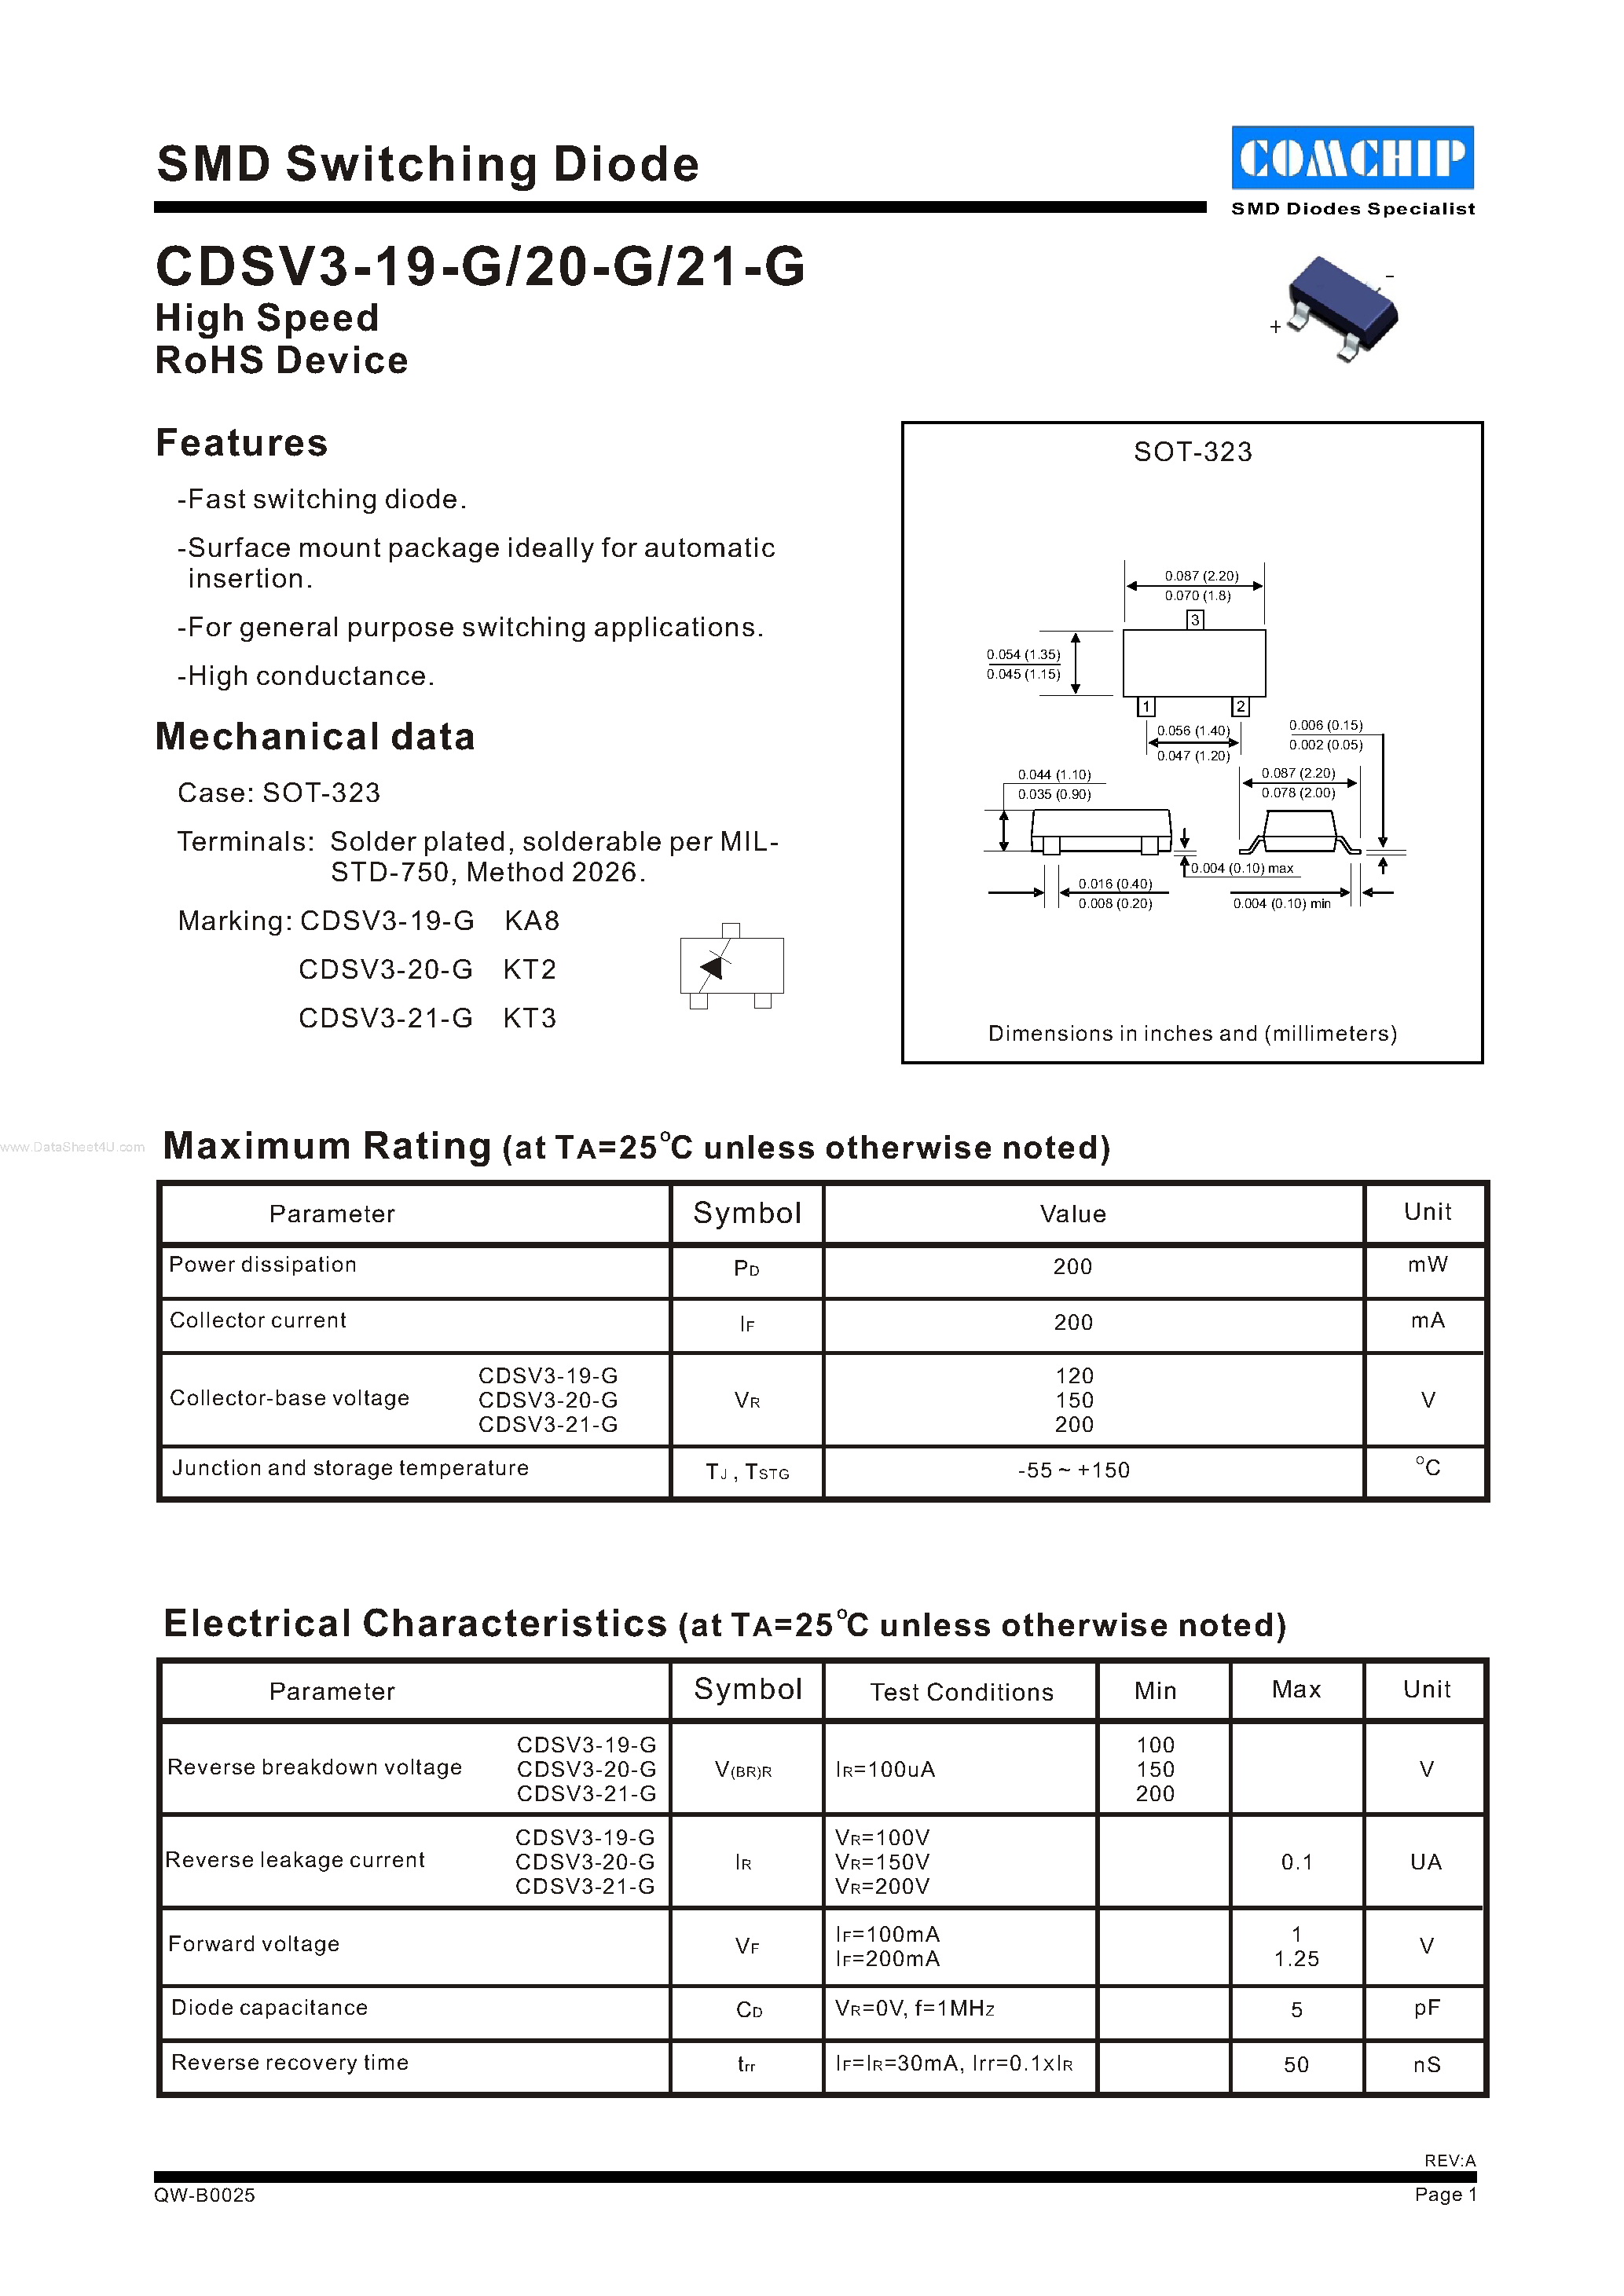 Даташит CDSV3-19-G - (CDSV3-19-G - CDSV3-21-G) SMD Switching Diode страница 1